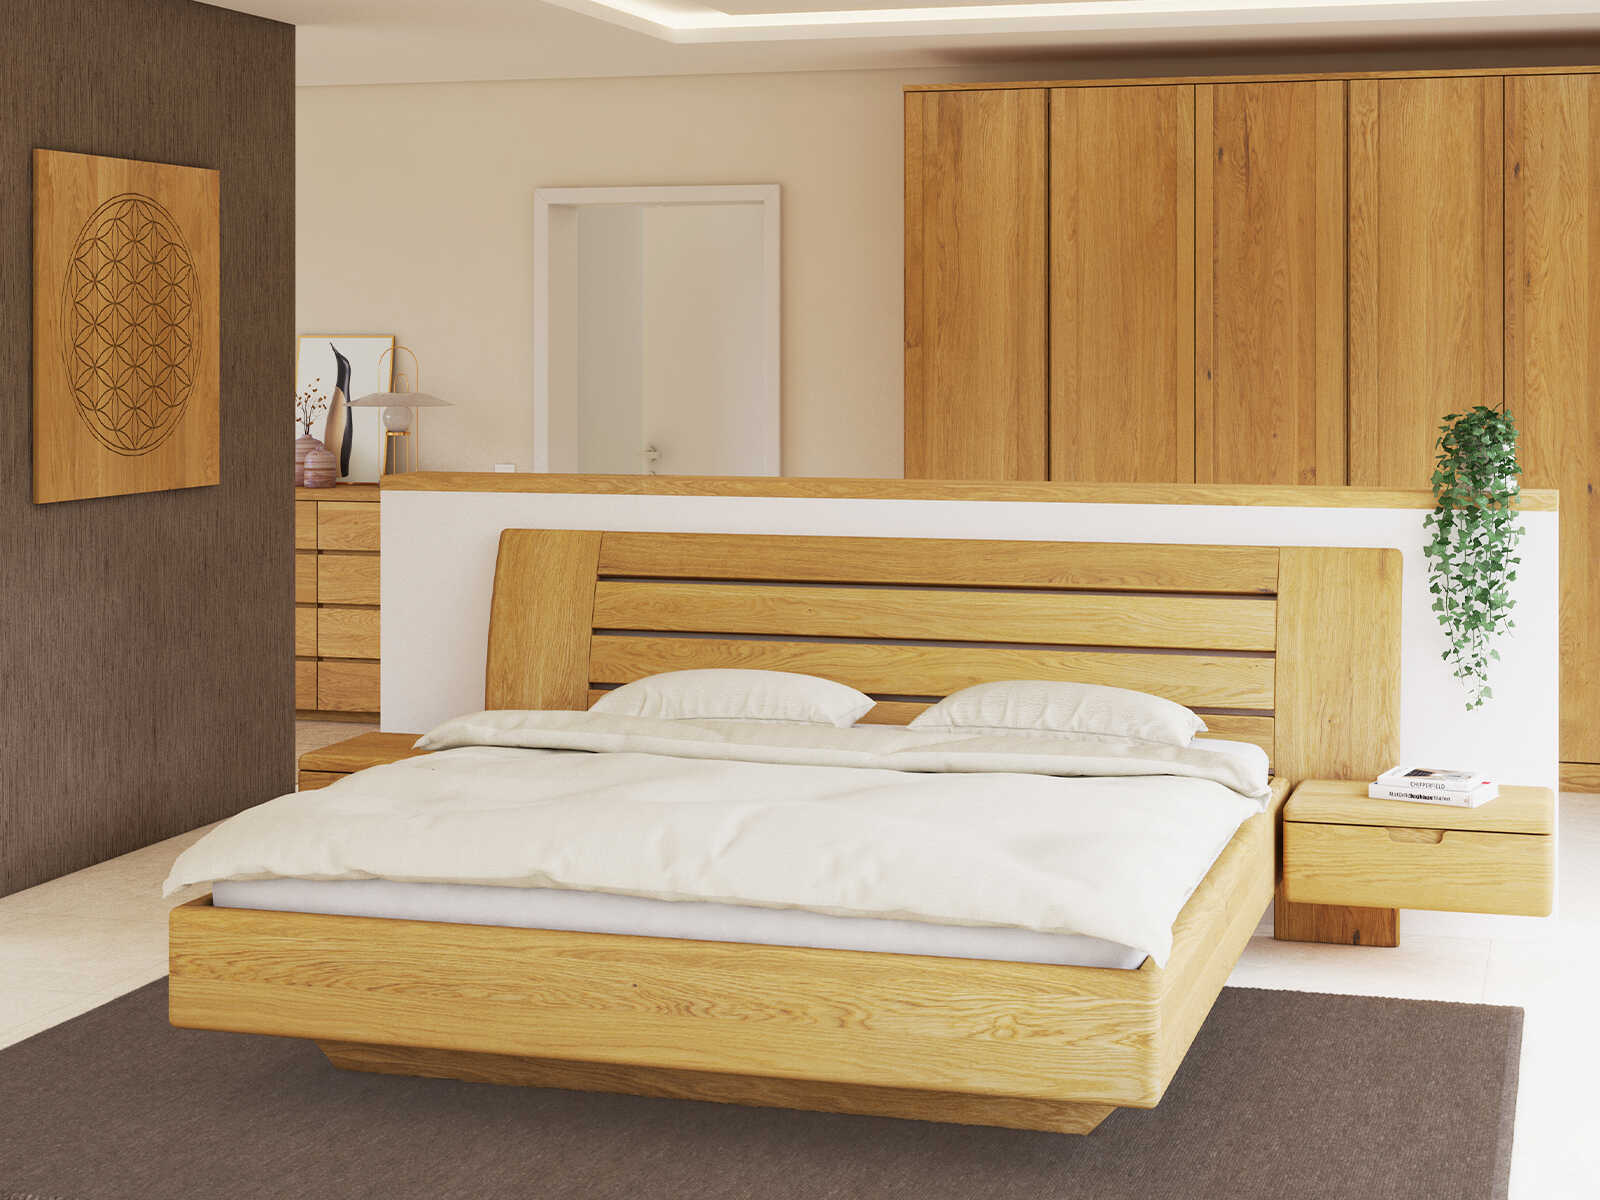 Bett „Bettina“ aus Massivholz in 180 x 200 cm, mit zwei Nachttische (60 cm breit)